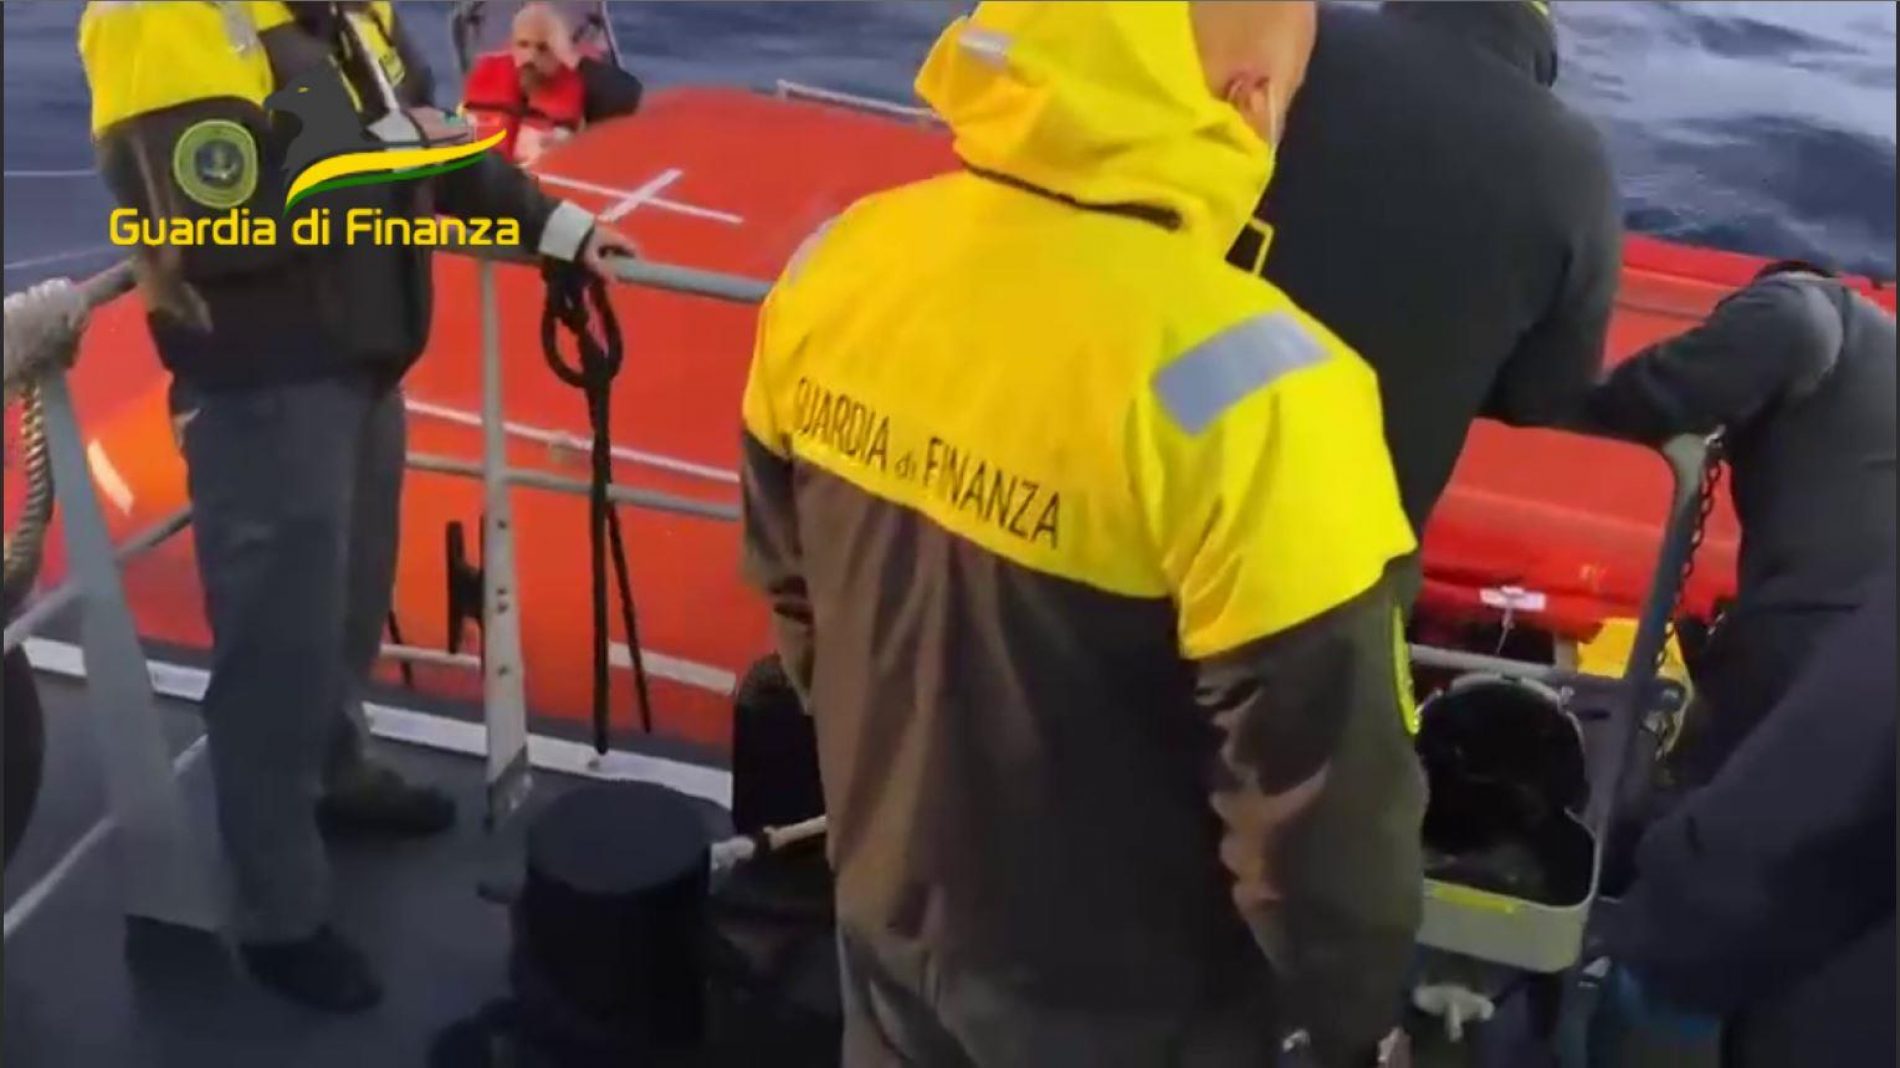 GUARDIA DI FINANZA.  Incendio di un traghetto presso Corfù. Unità navali del Corpo traggono in salvo 243 persone. In salvo anche gli altri passeggeri e i componenti l’equipaggio.￼